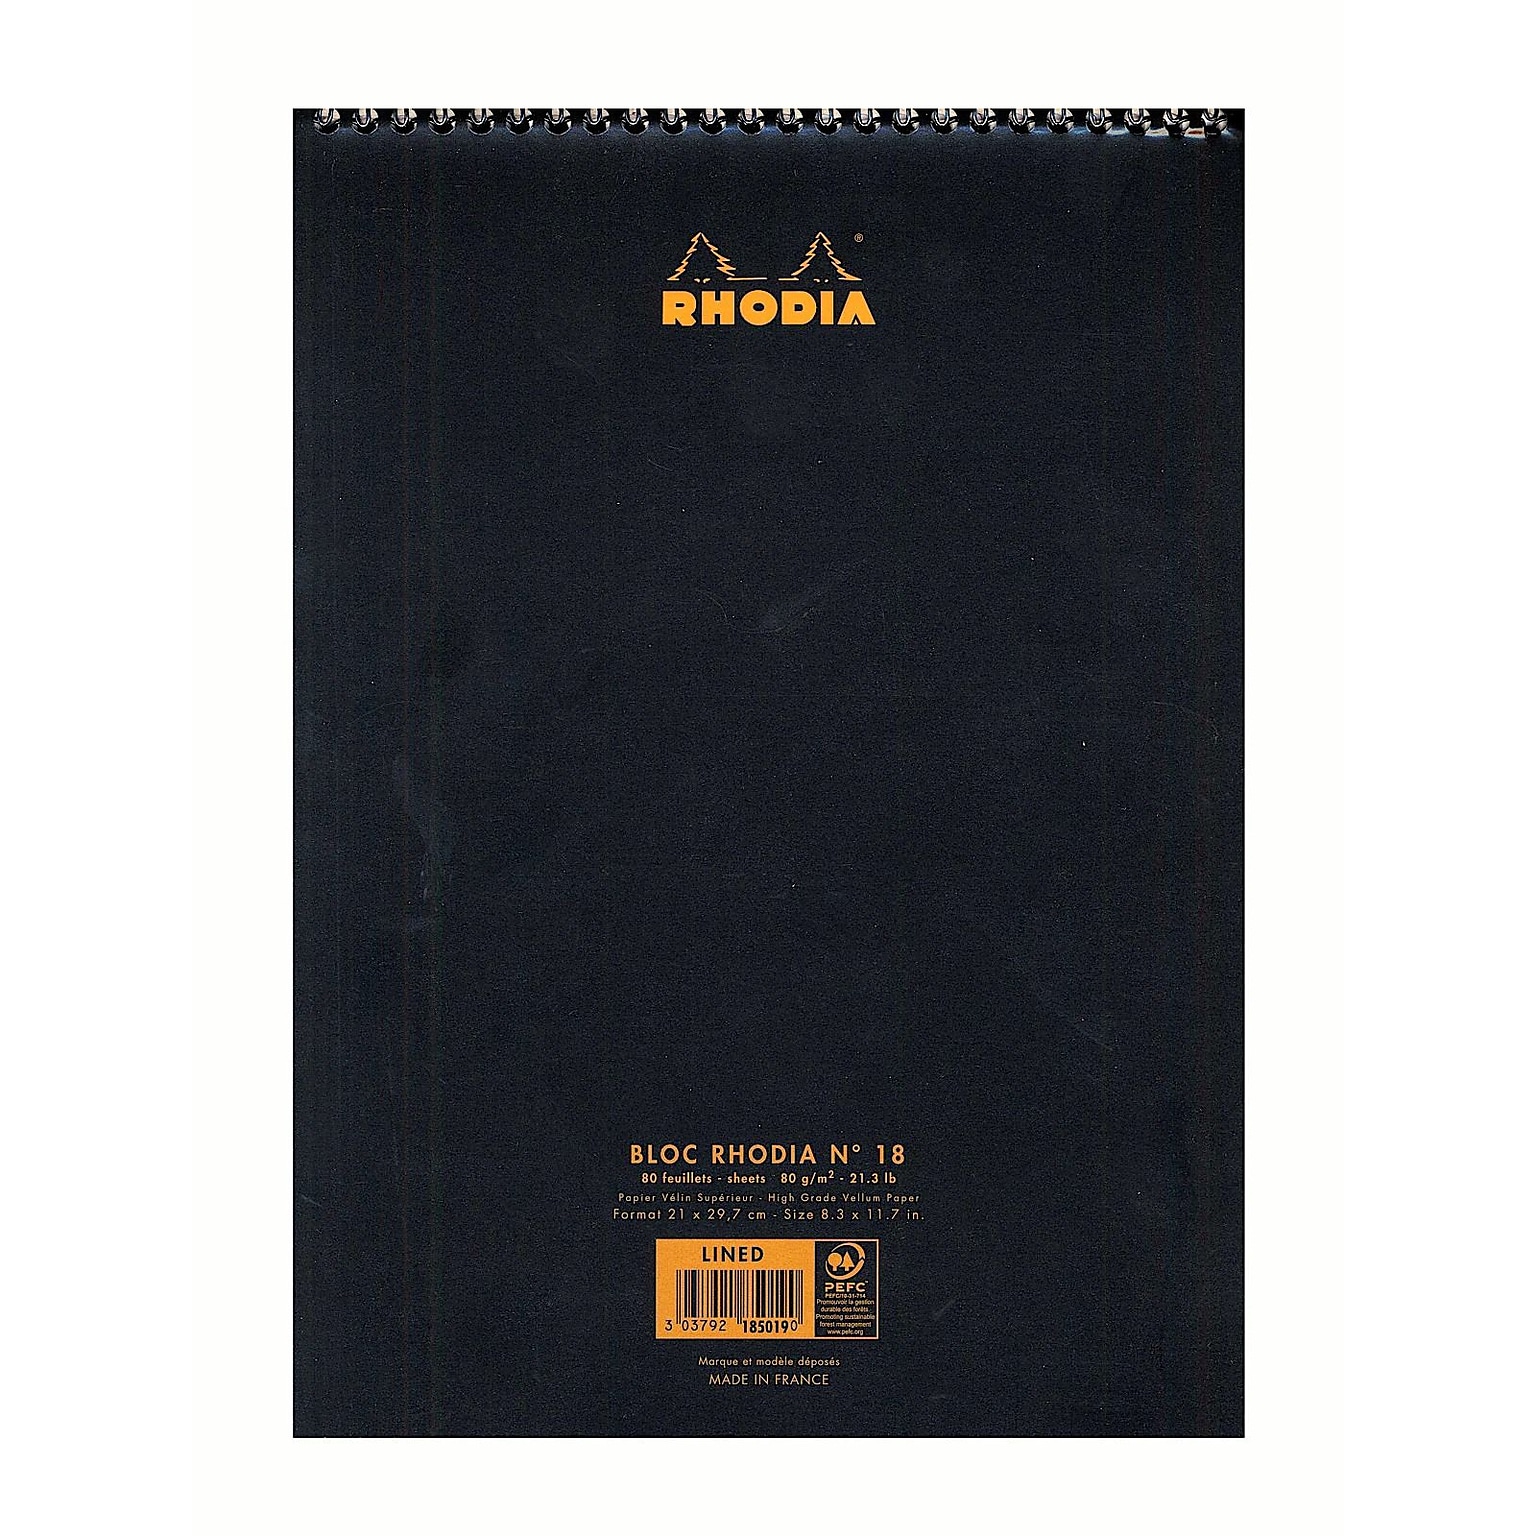 Rhodia Wirebound Notebooks Ruled 8 1/4 In. X 12 1/2 In. Black (185019)